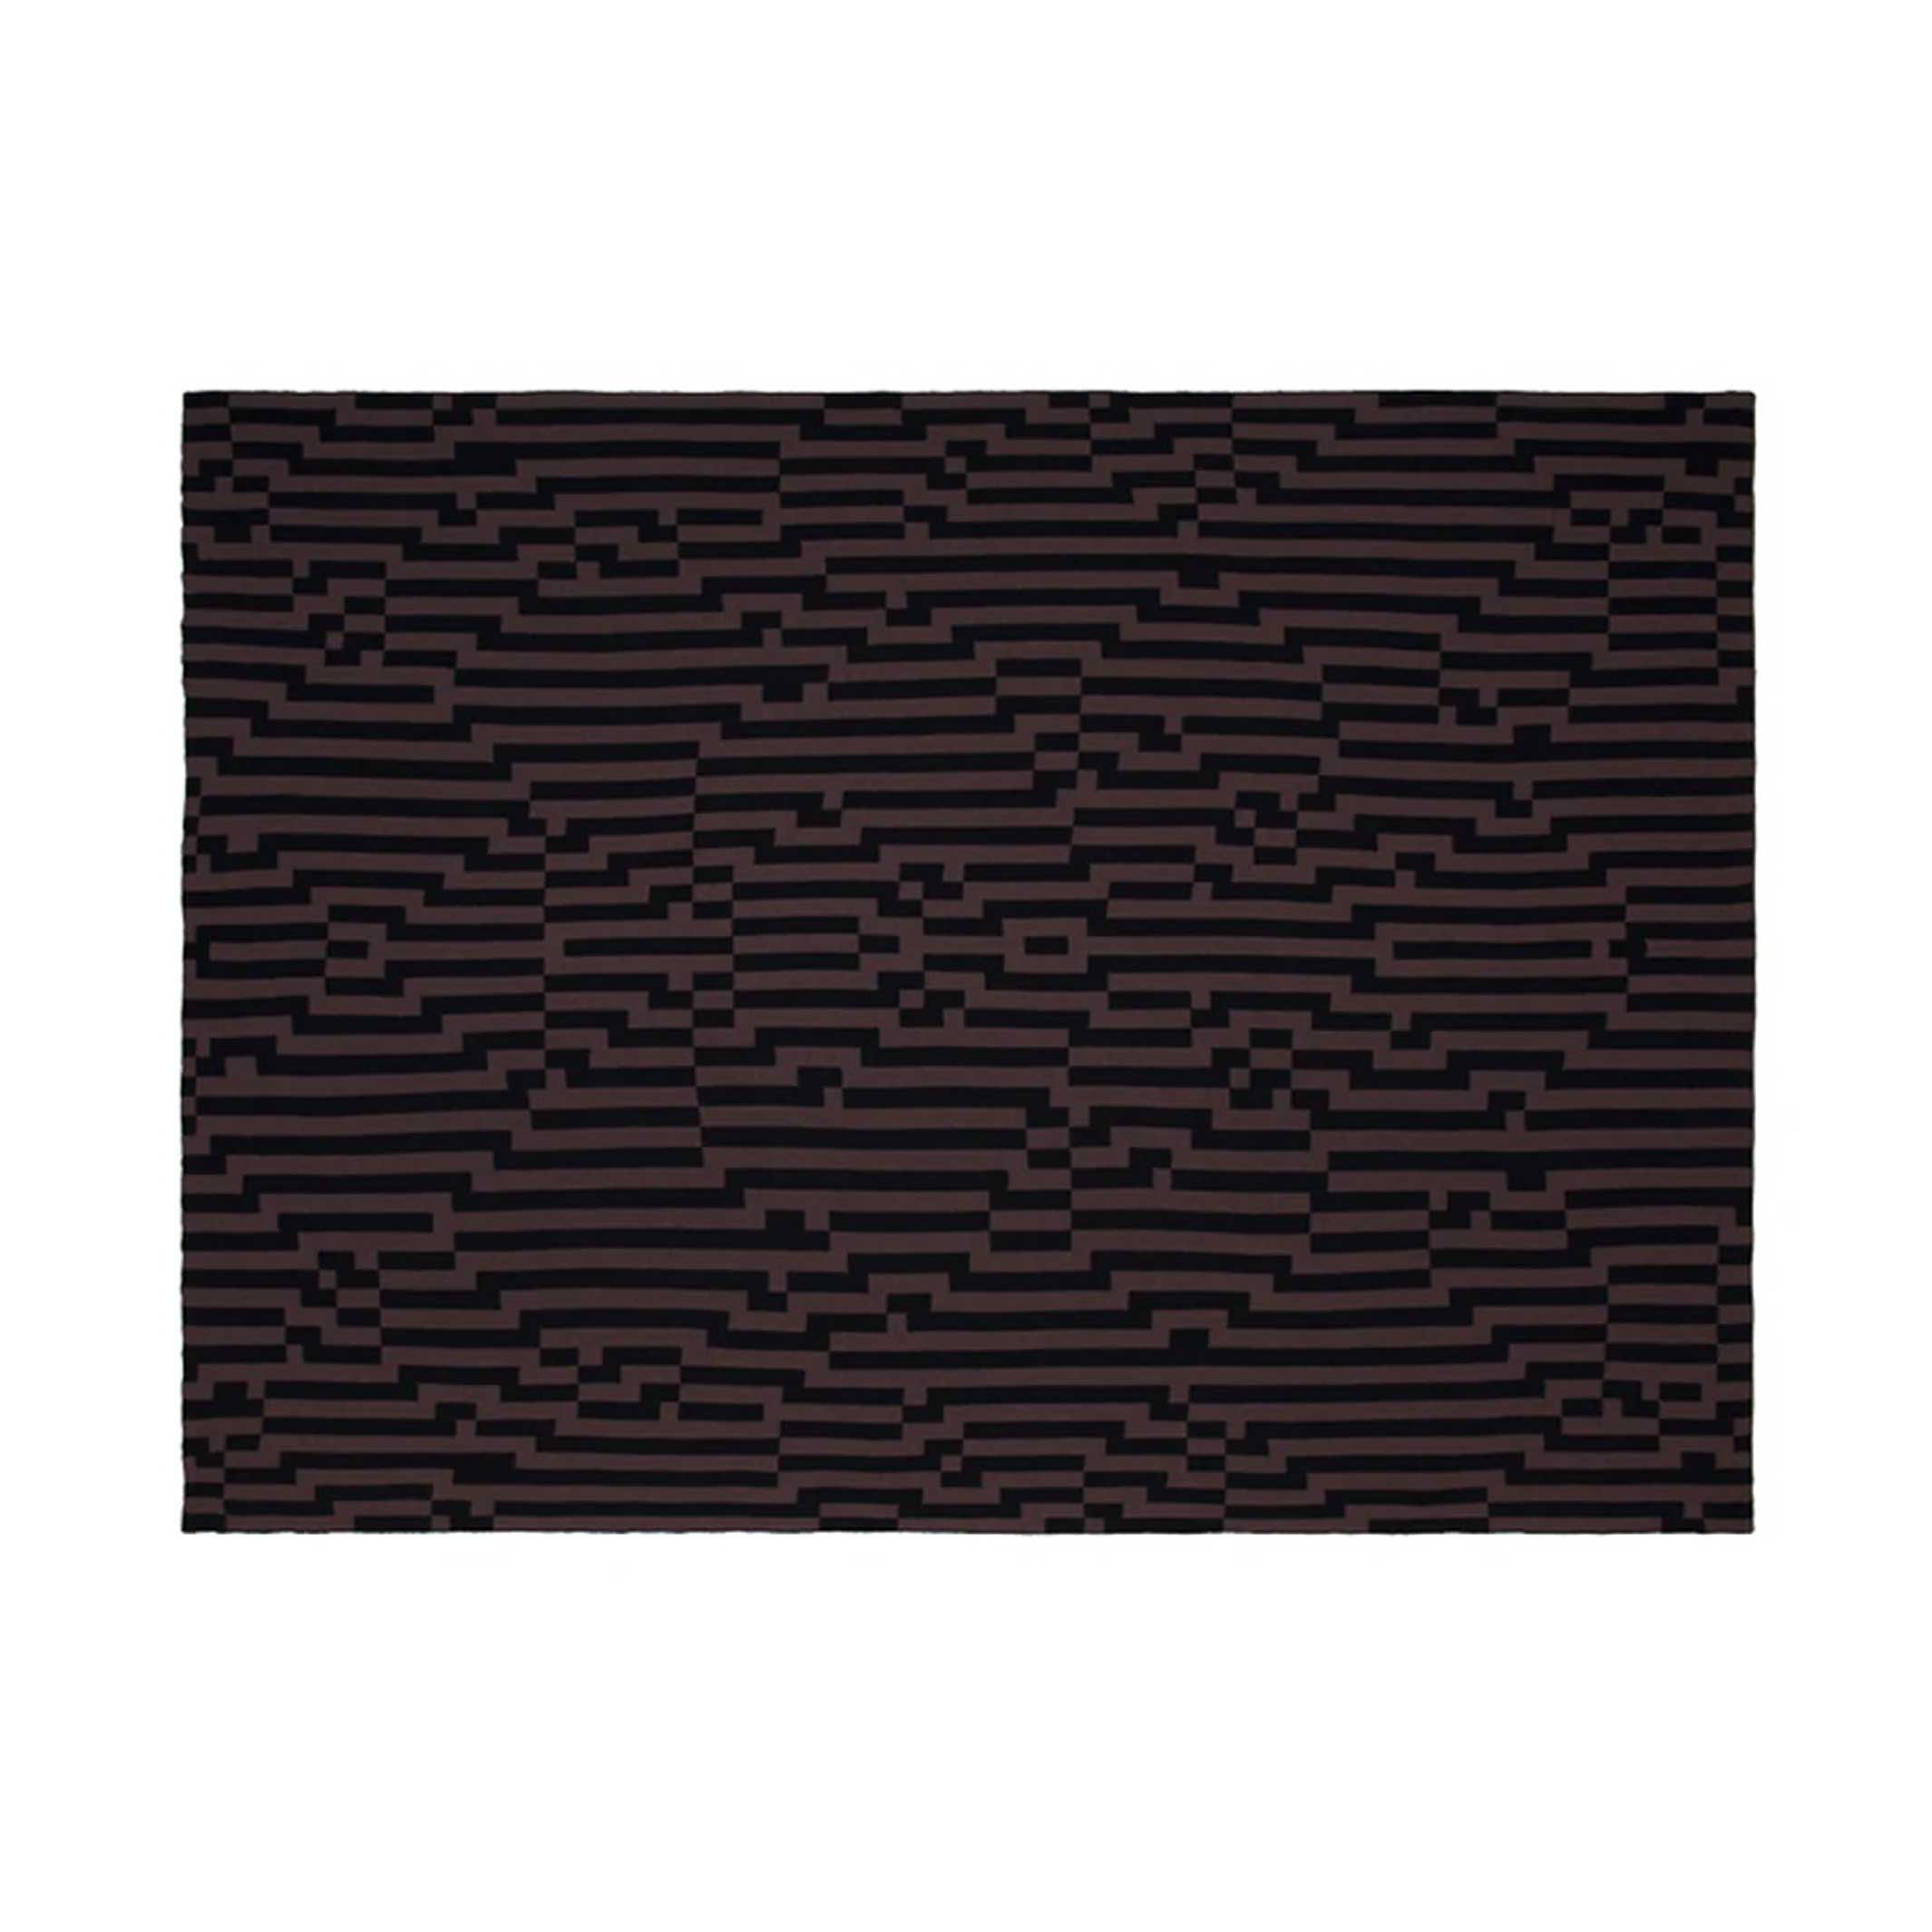 BITMAP ZOOM IN 6 | Braun & schwarze TAGESDECKE | 180x140 cm | 100% Merino Wolle | Cristian Zuzunaga